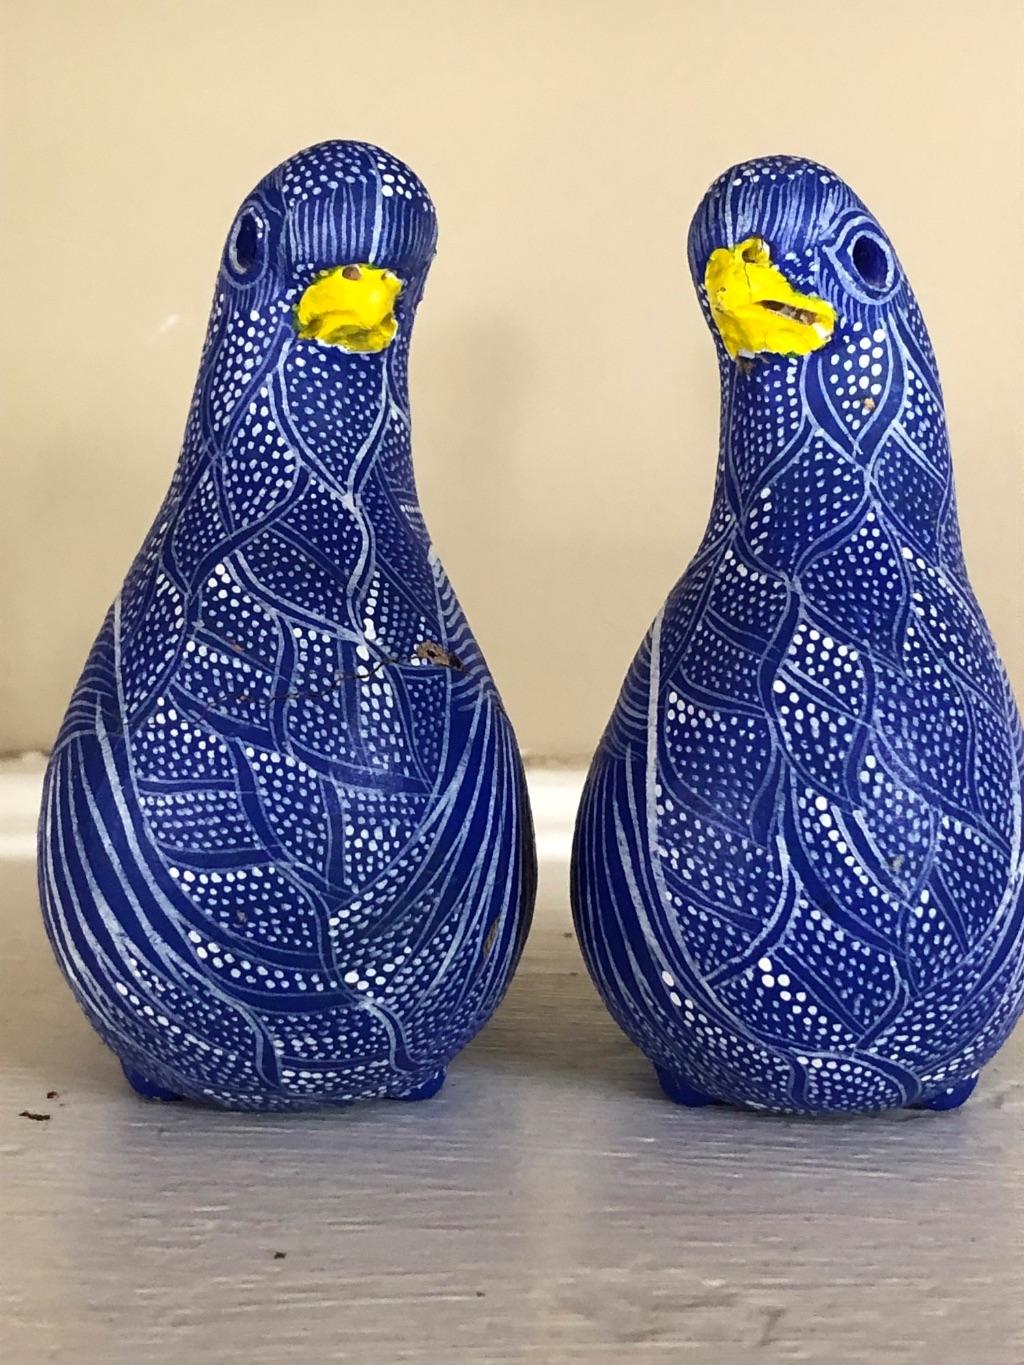 Pair of Beautiful Ceramic Birds from Chiapas, Mexico